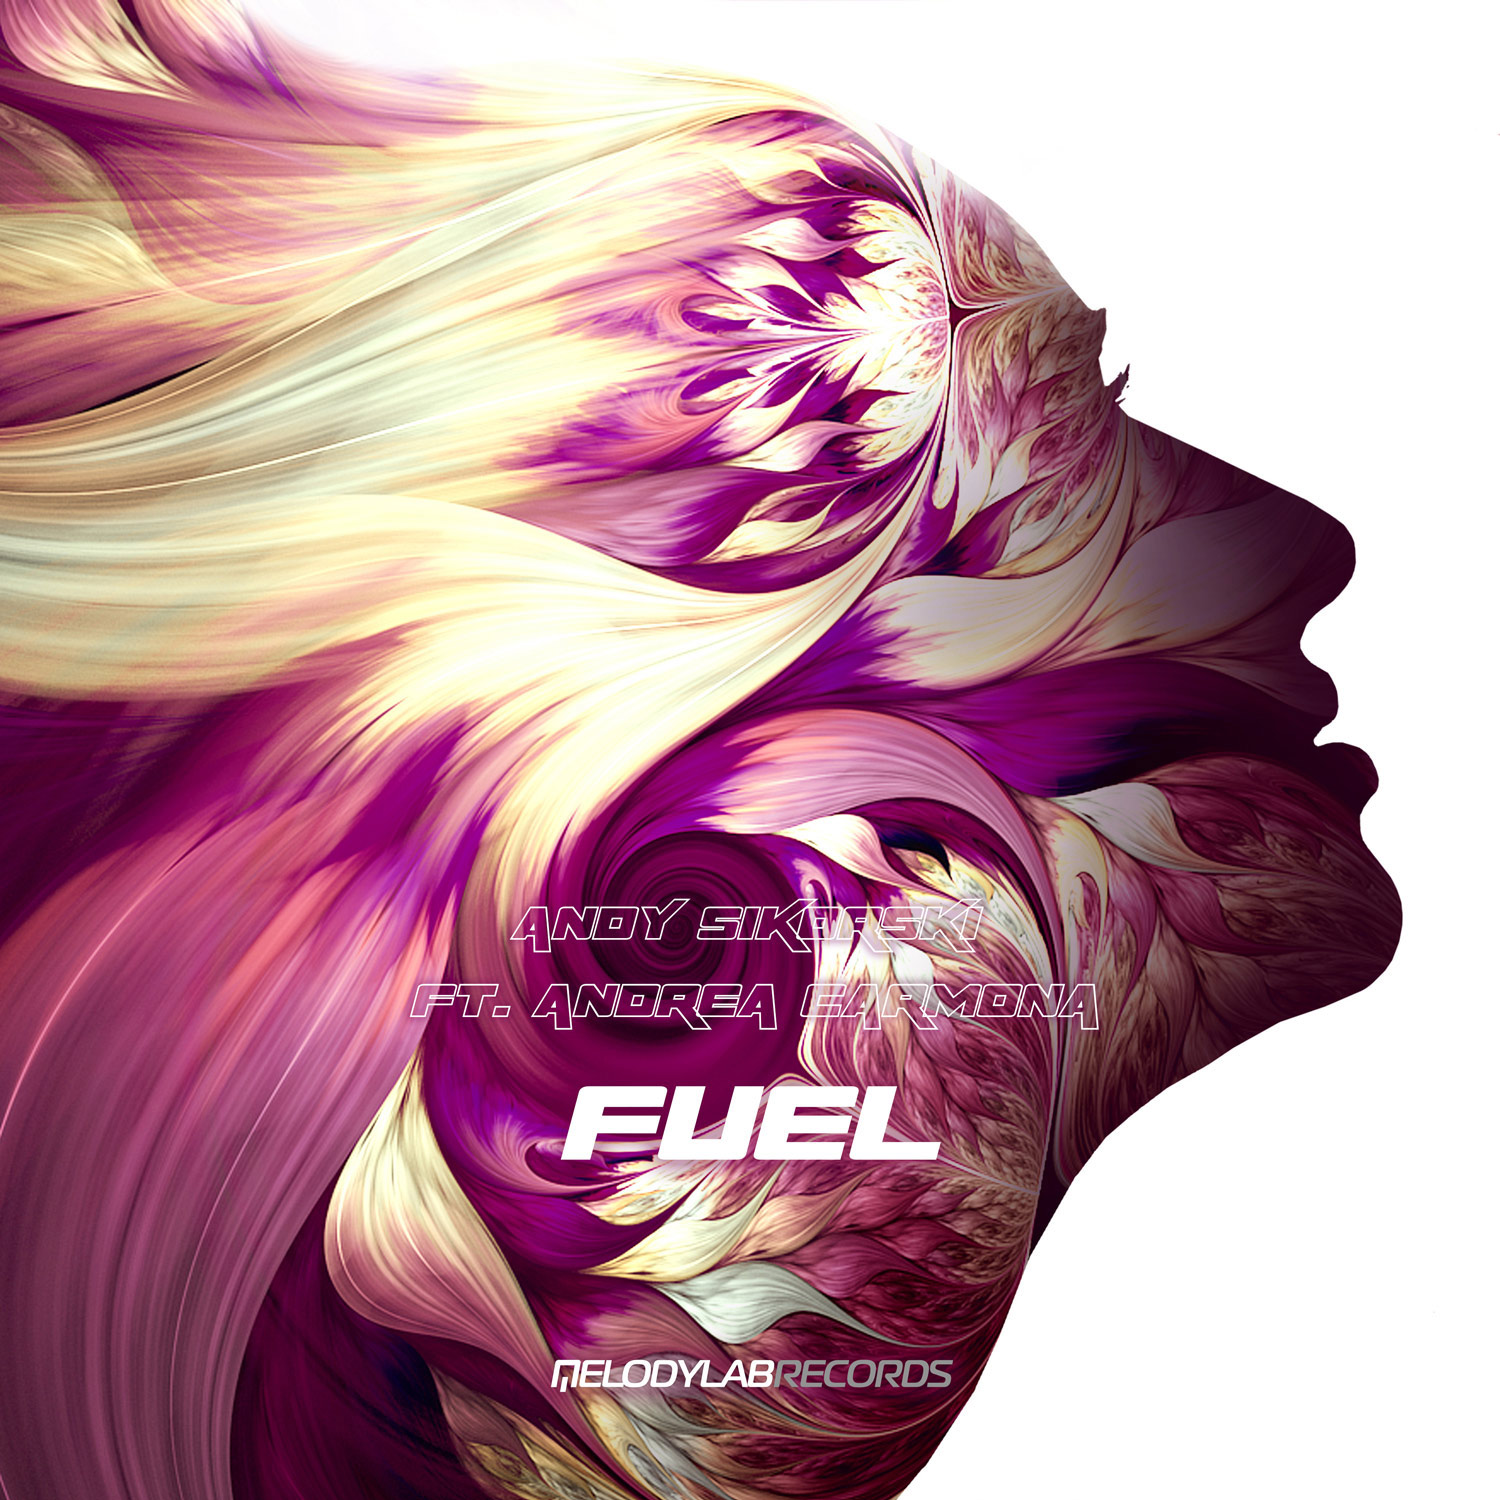 Fuel (featuring Andrea Carmona)